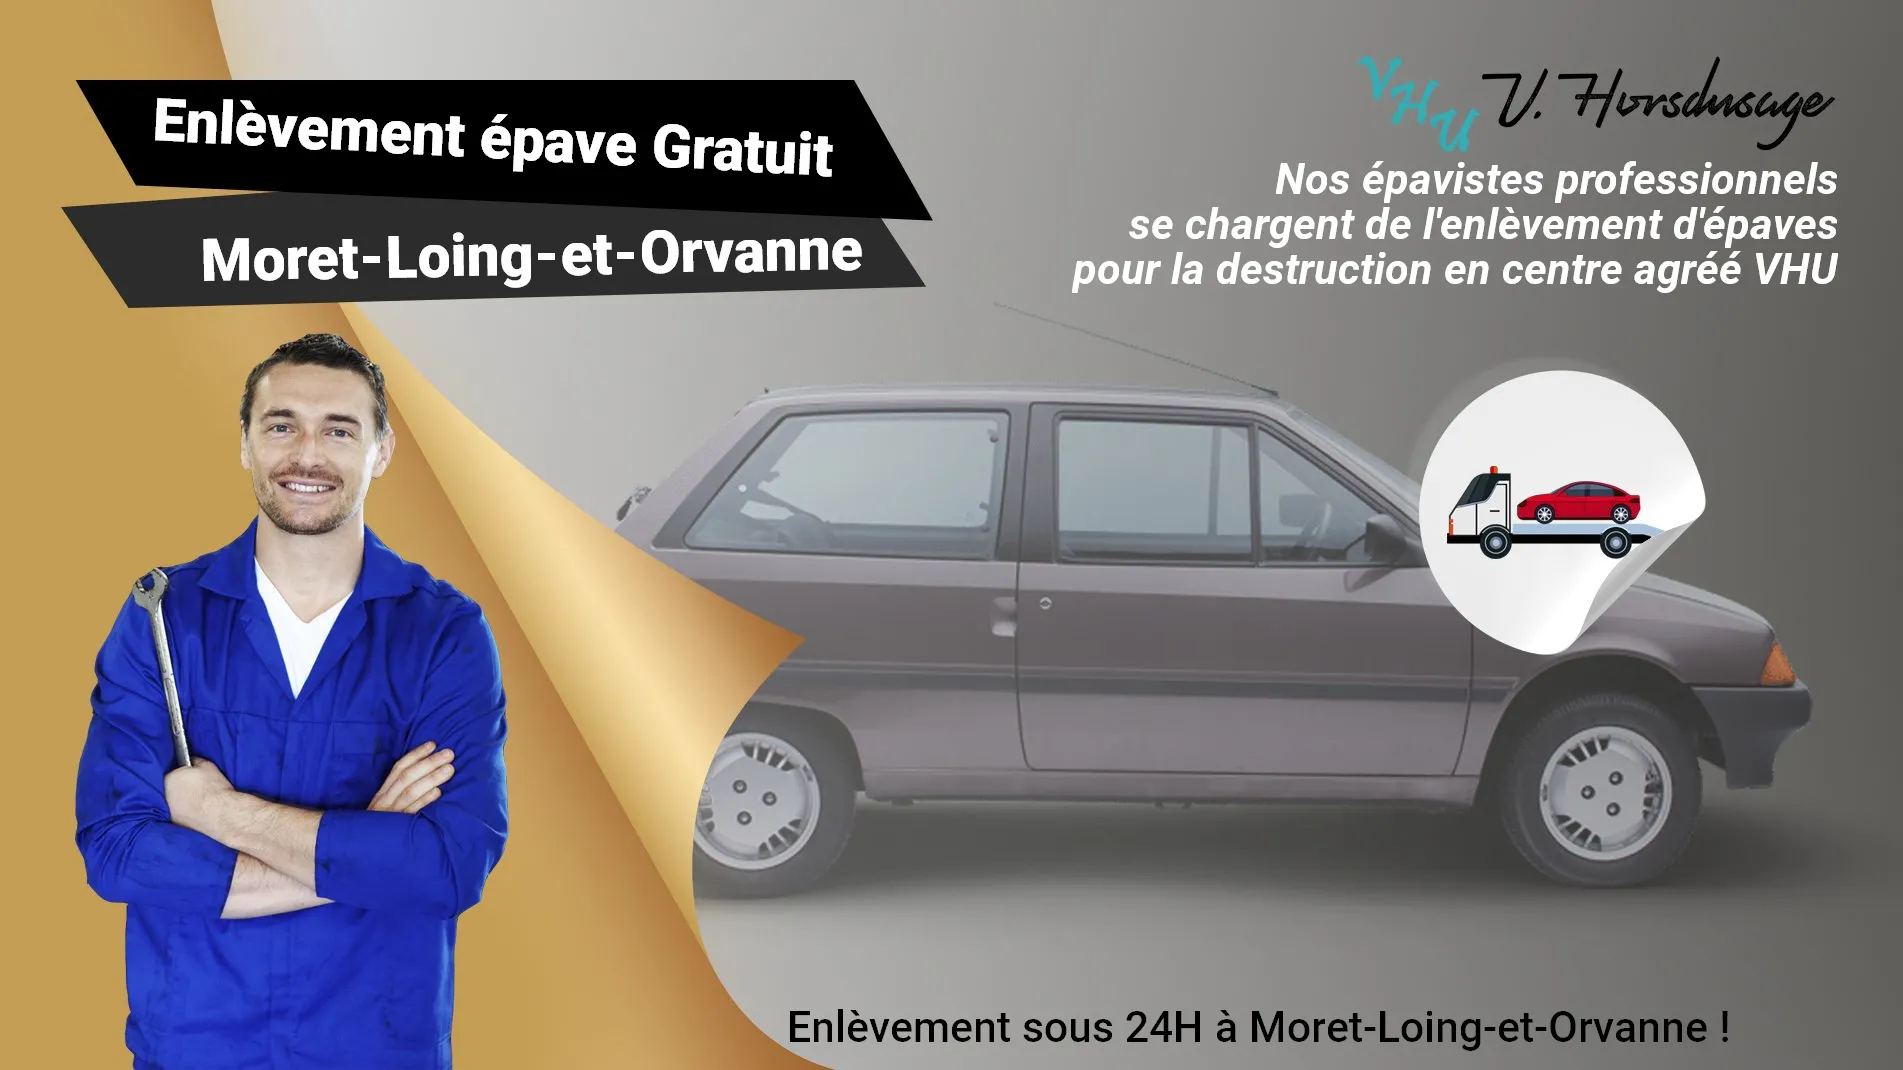 Pour un enlèvement gratuit à Moret-Loing-et-Orvanne, contactez nos épavistes agréé VHU